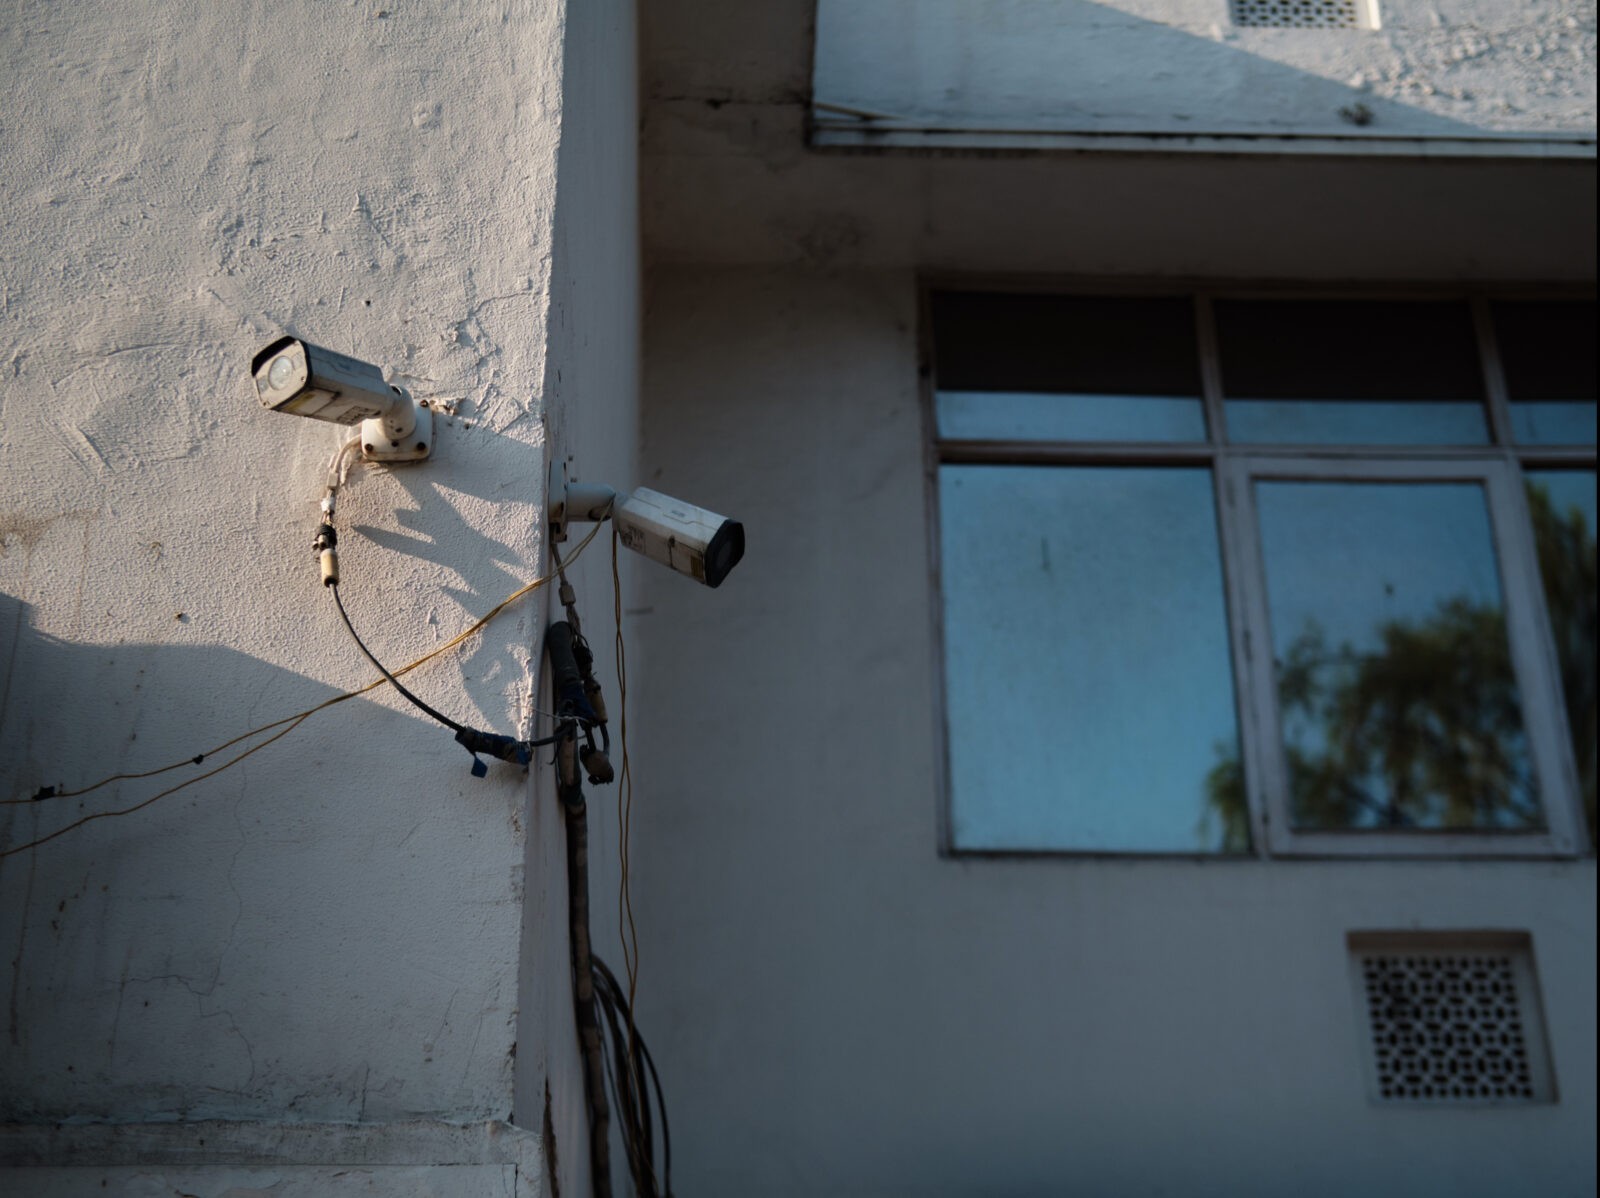 CCTV cameras Delhi surveillance India